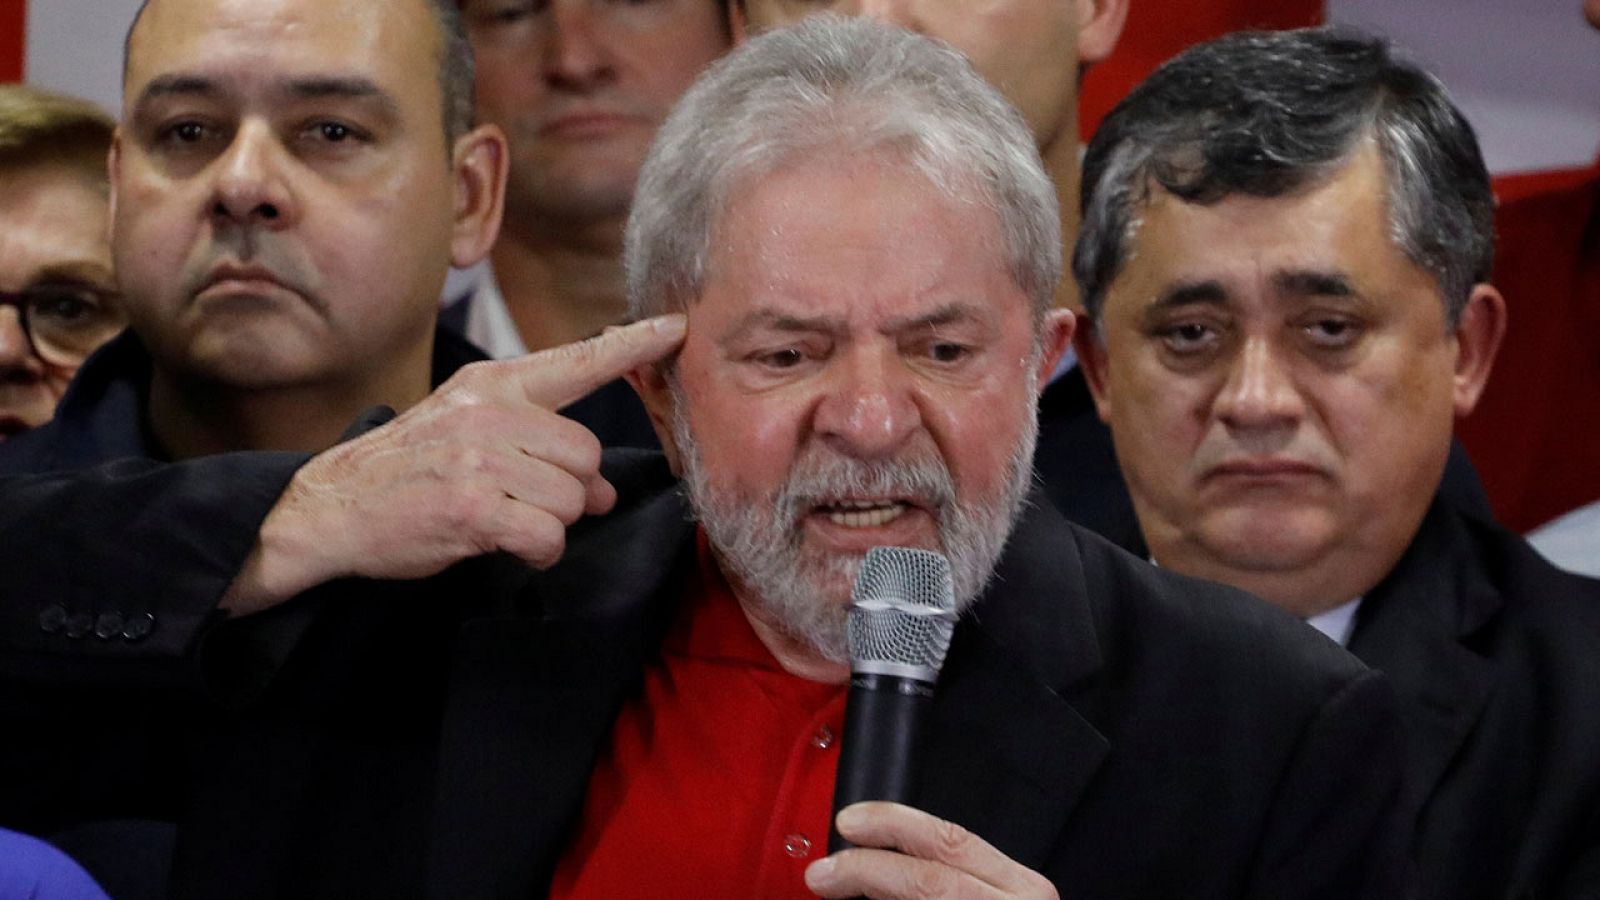 El expresidente brasileño, Lula da Silva, da una rueda de prensa en Sao Paulo tras su condena por corrupción.